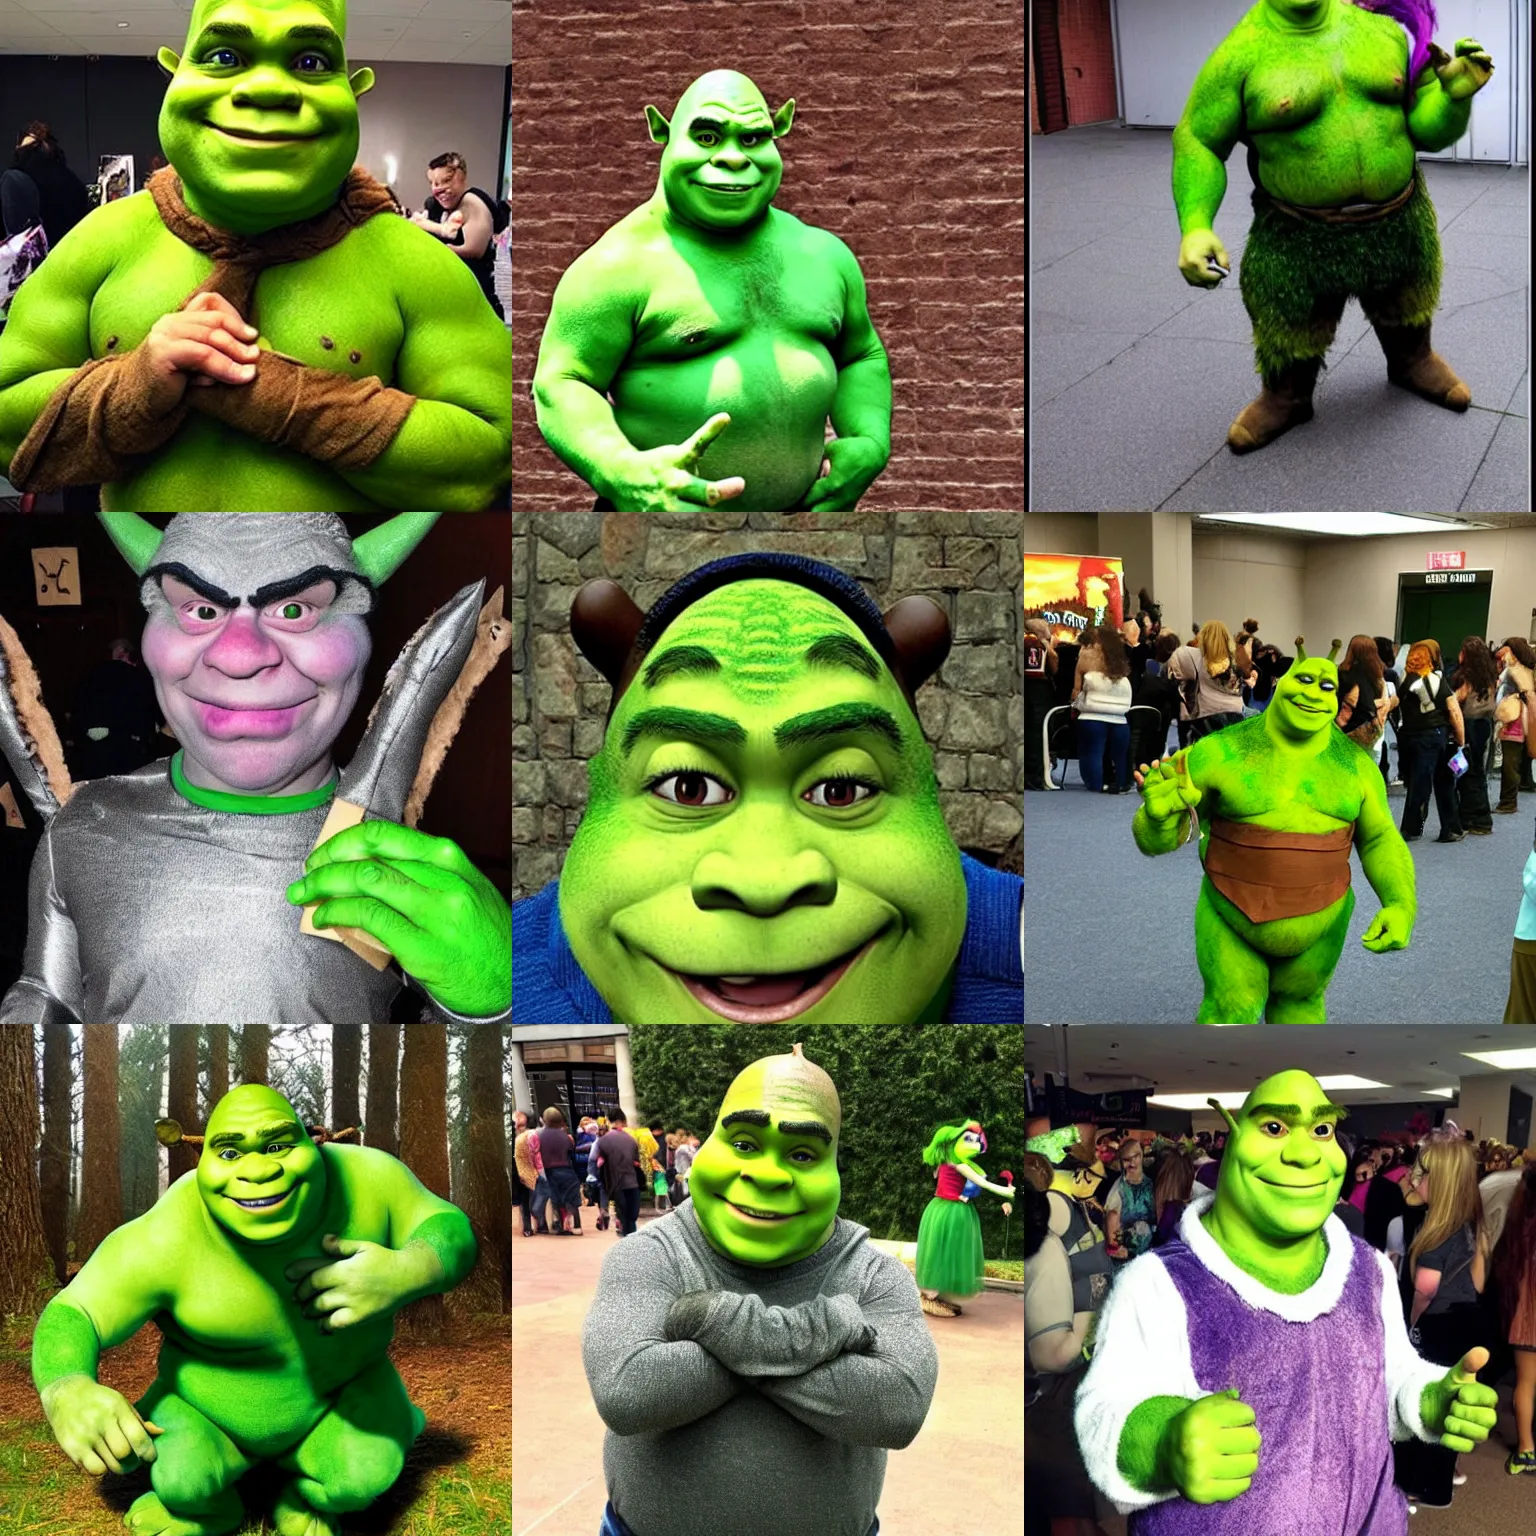 Prompt: Shrek cosplay